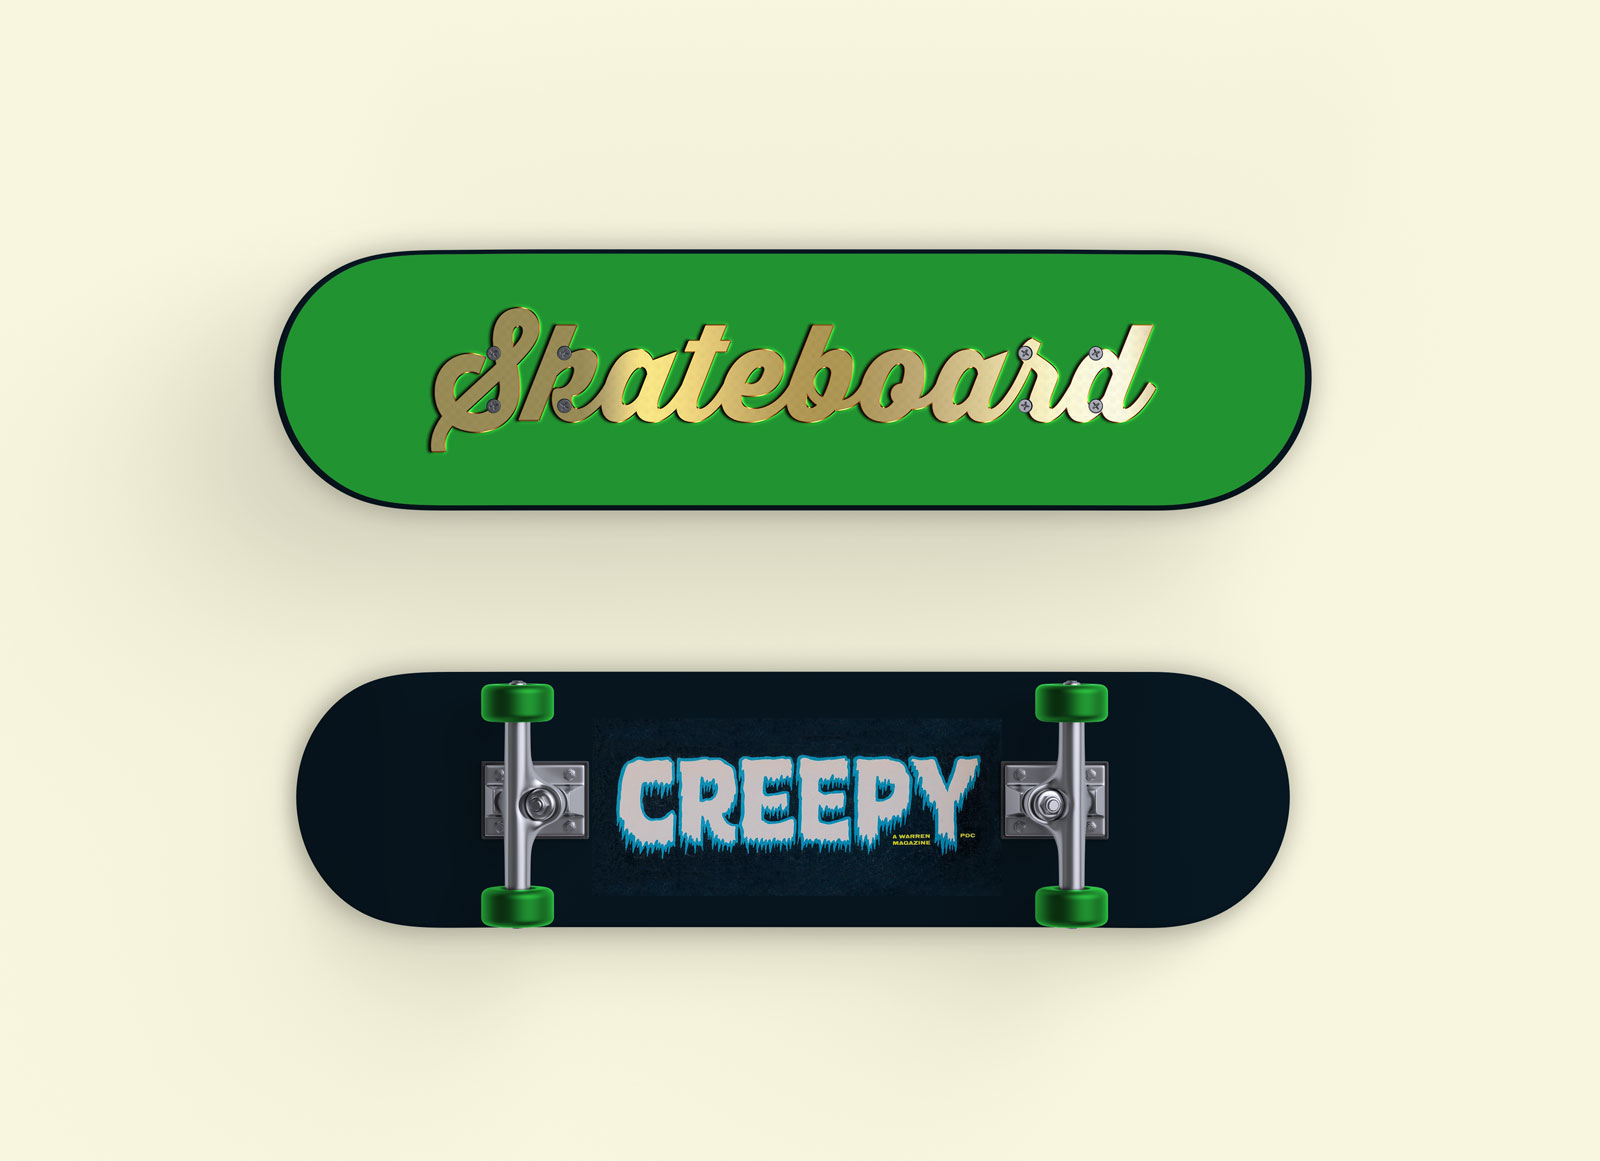 Maquette de skateboard avant et arrière